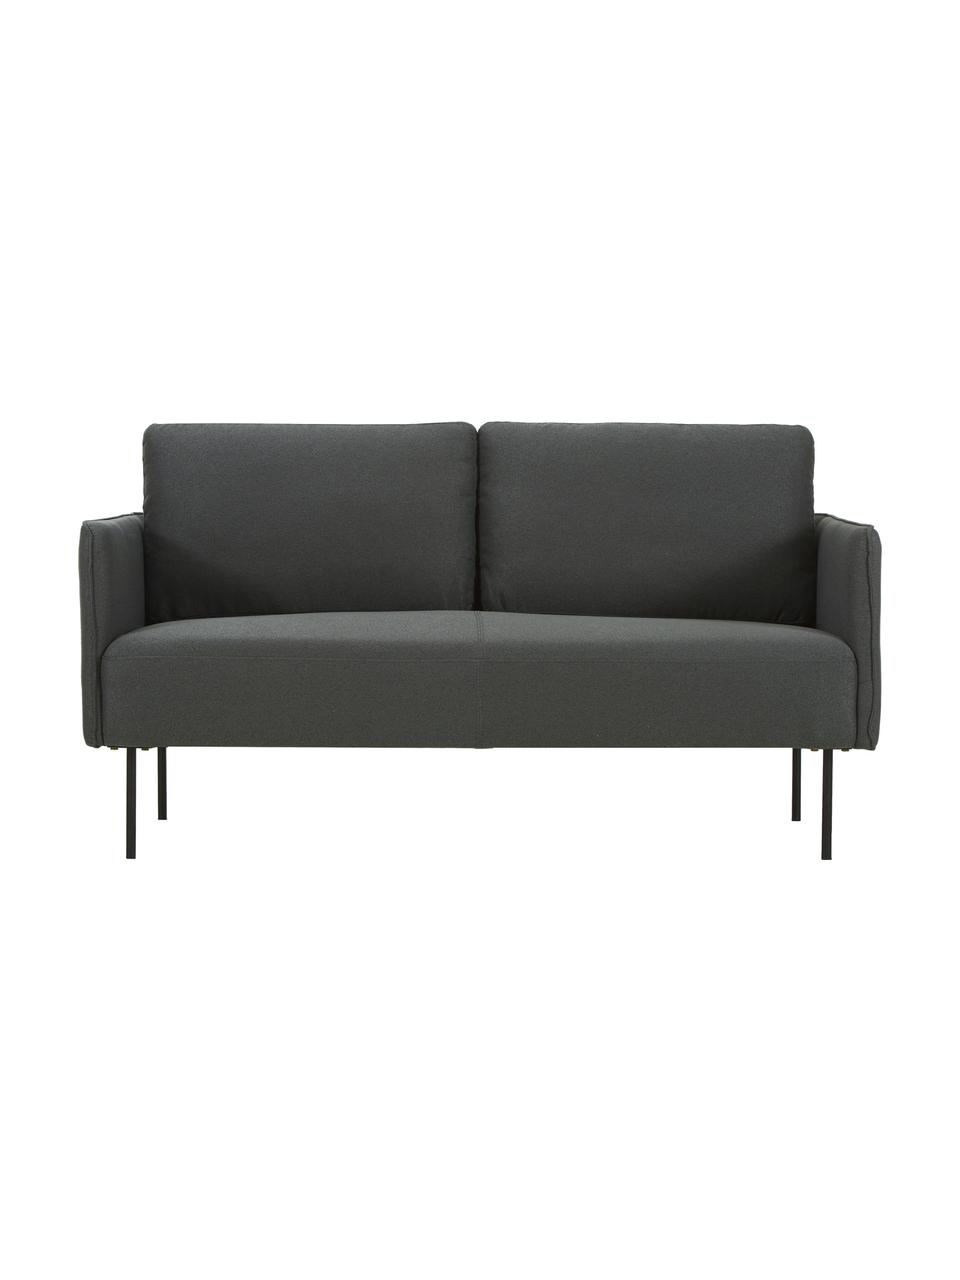 Sofa z metalowymi nogami Ramira (2-osobowa), Tapicerka: poliester 20 000 cykli w , Nogi: metal malowany proszkowo, Antracytowy, S 151 x G 76 cm